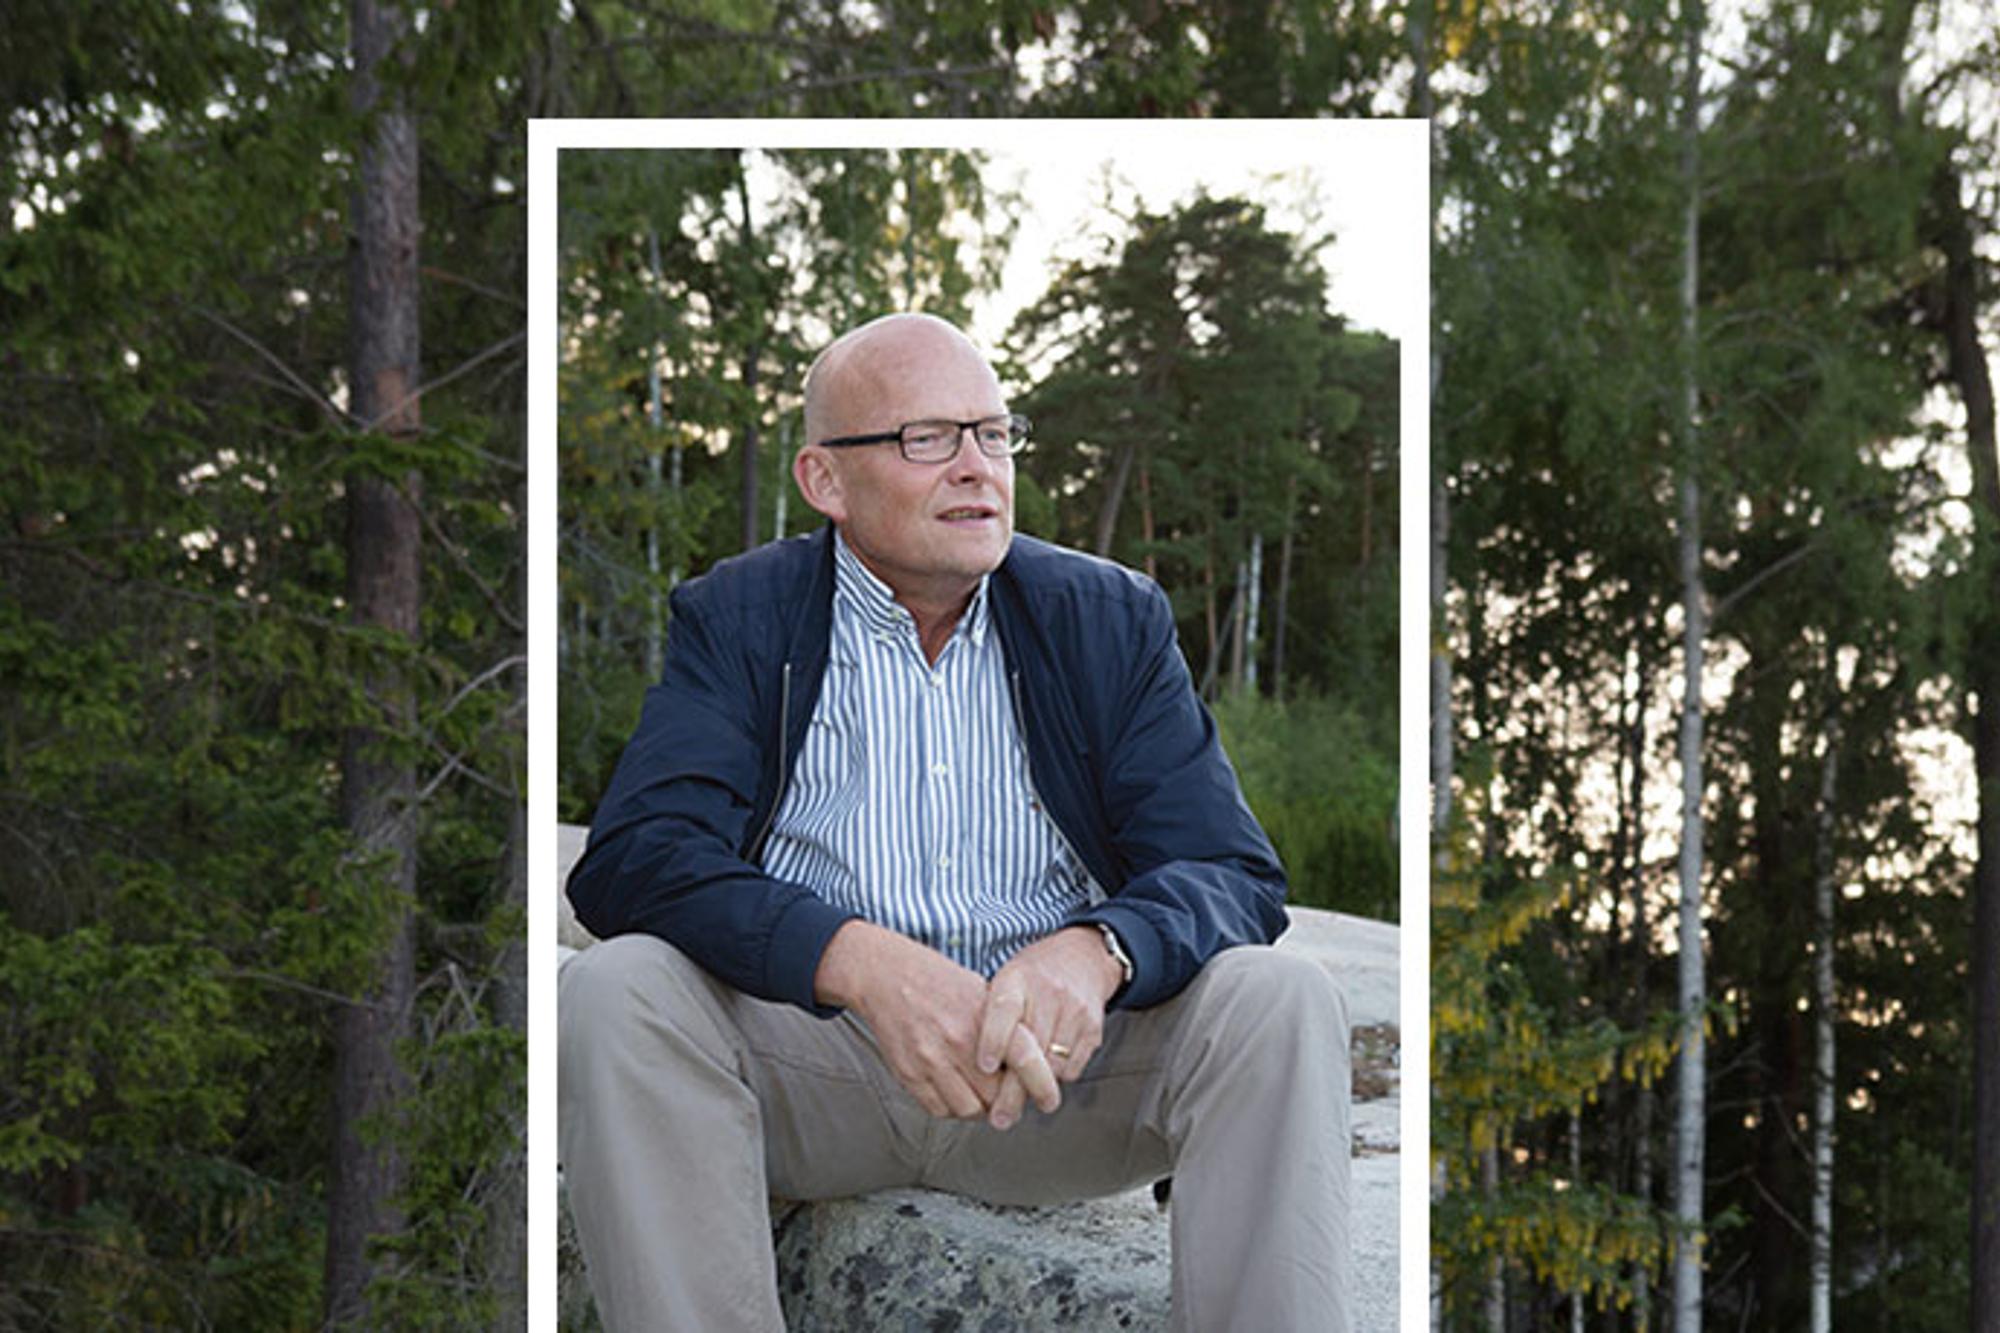 Porträttbild av Peter Ågren som sitter på en sten och tittar till höger om kameran. Bakgrunden består av träd i en skog.